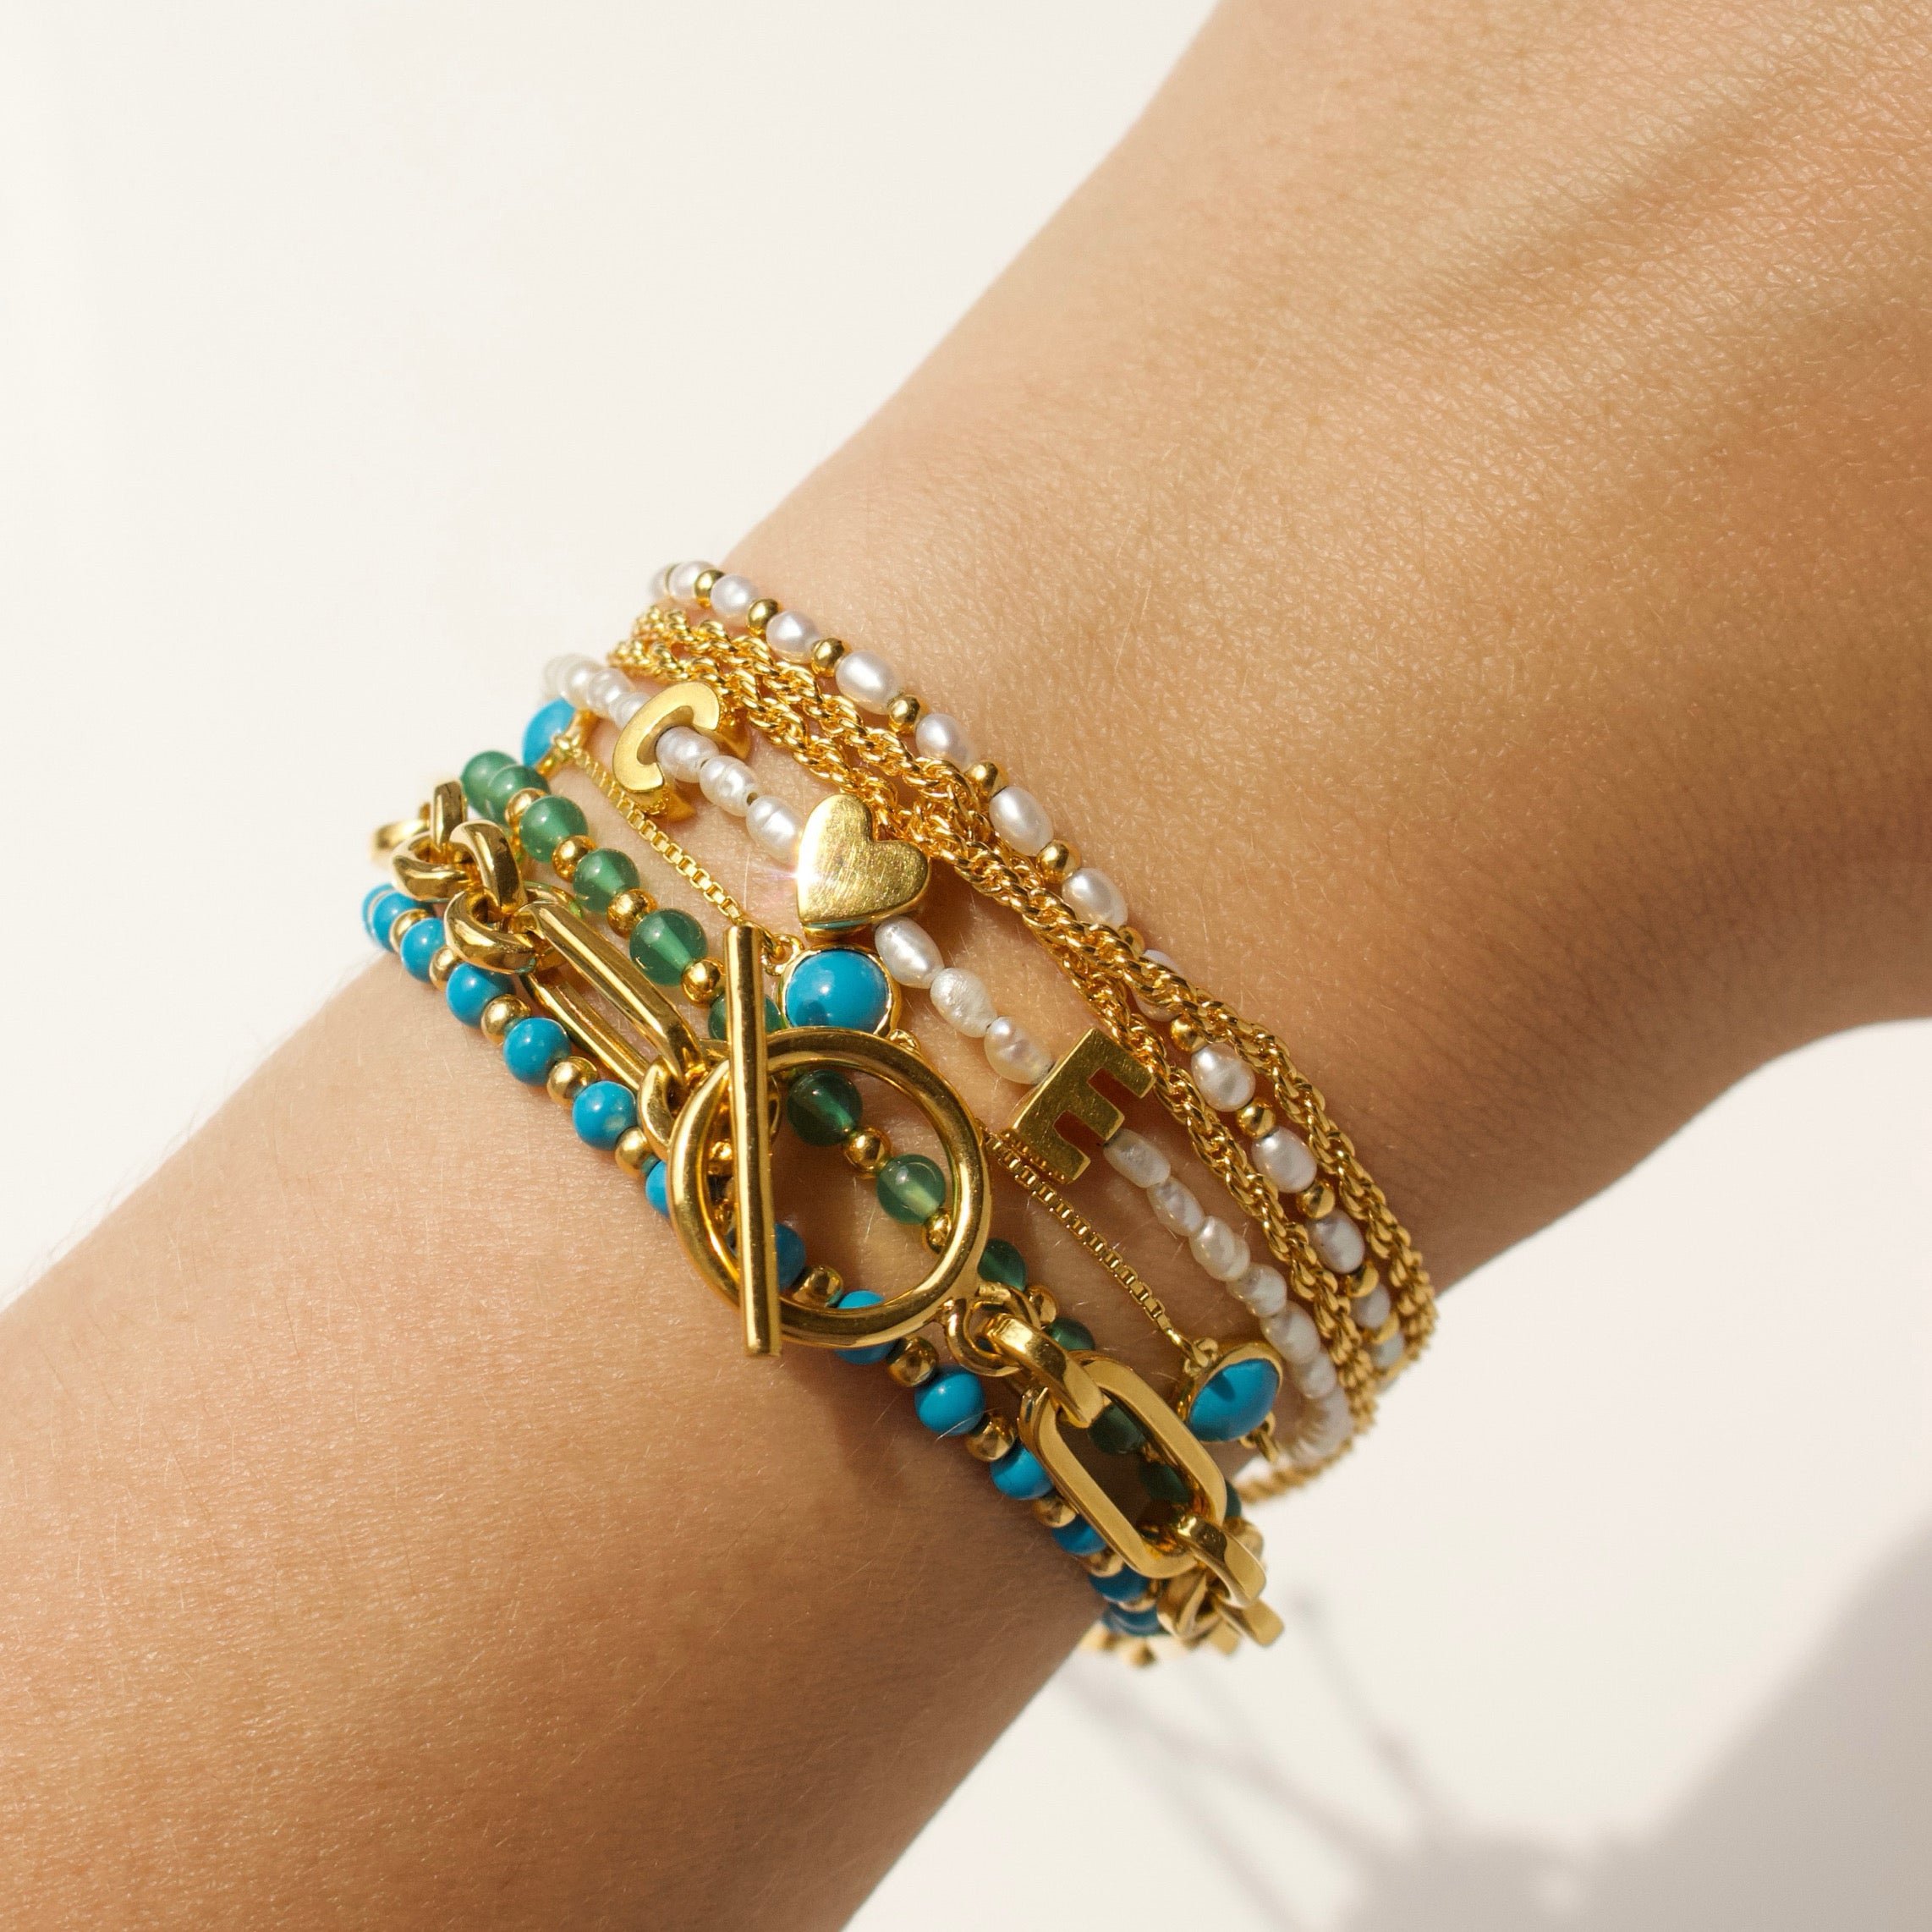 Custom made bracelets just for you – Made just for you custom made designed  bracelets and memorial bracelets